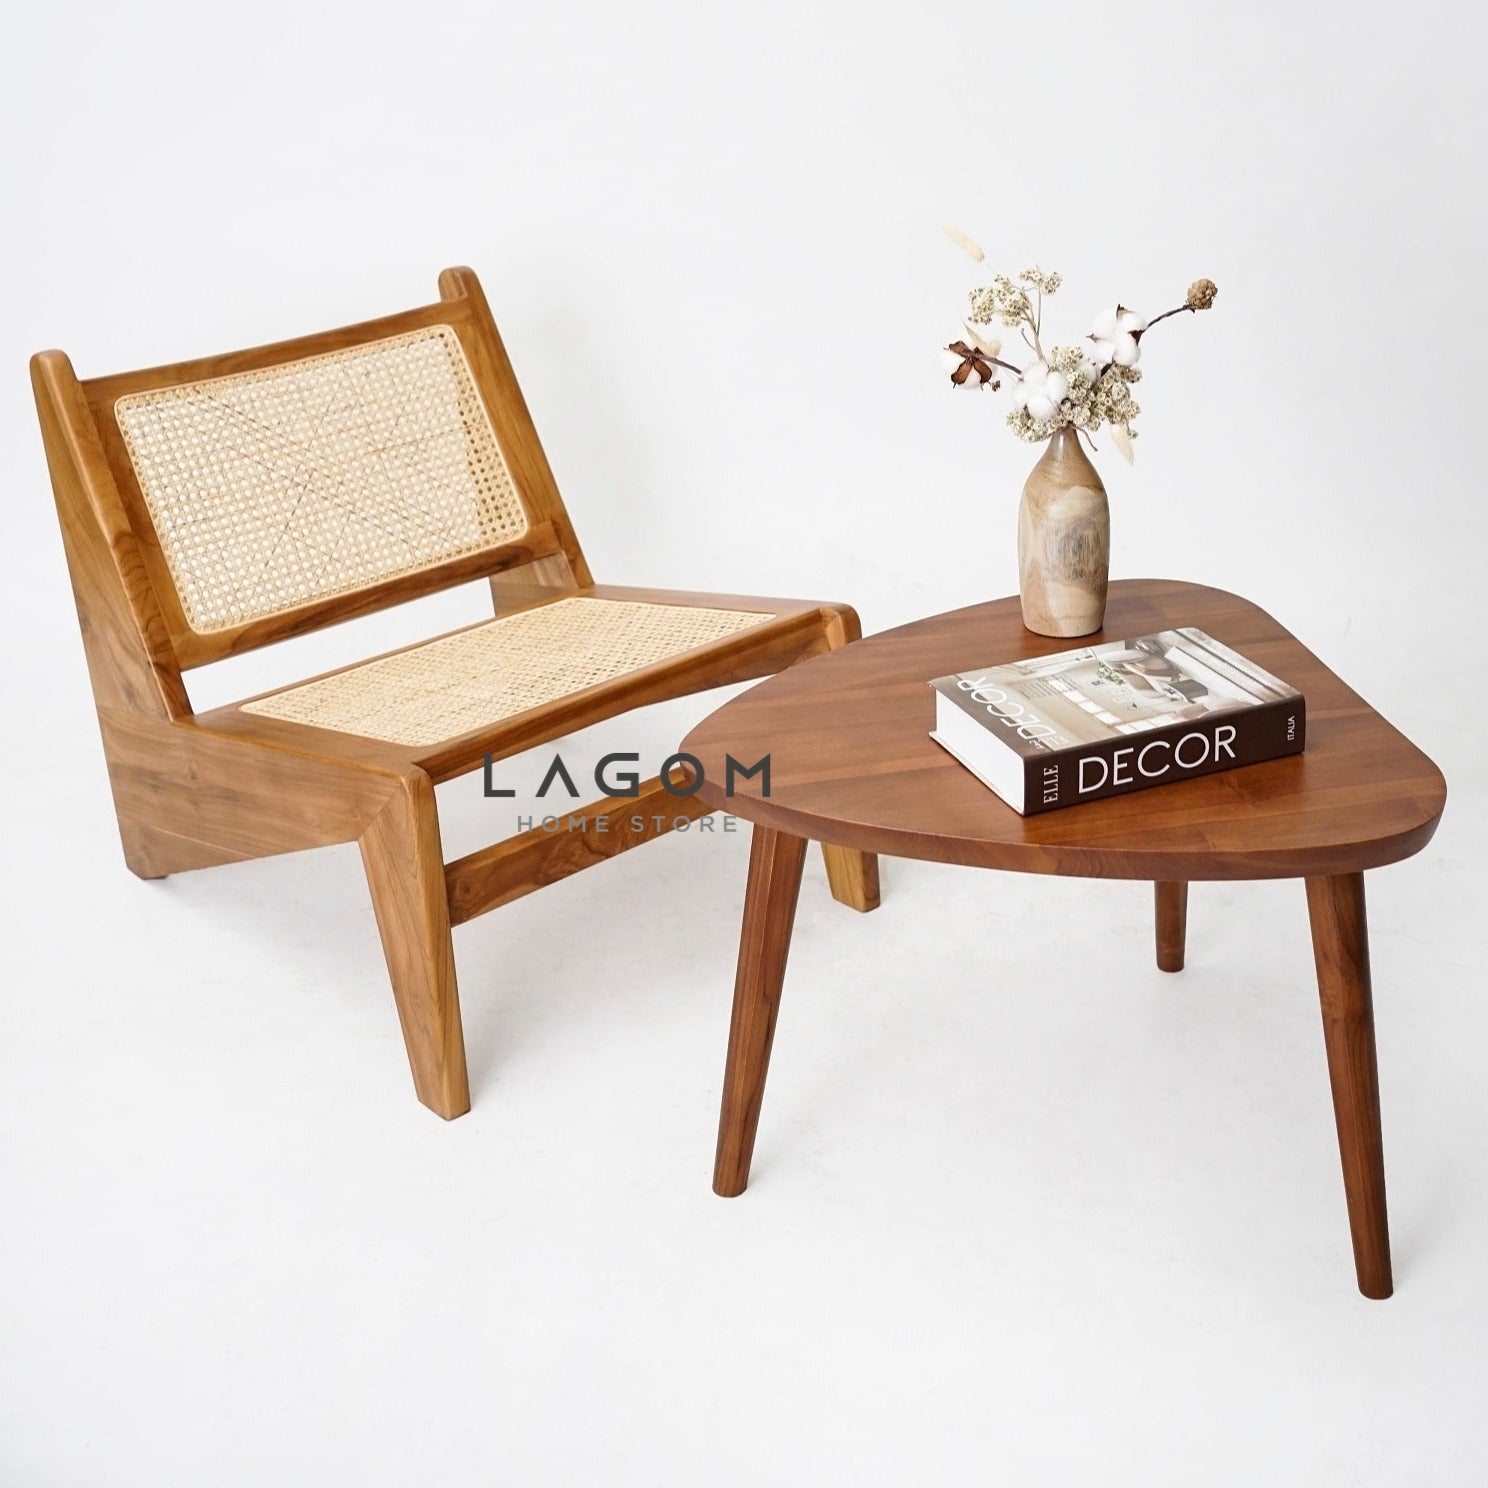 Meja Samping Bentuk Segitiga dari Kayu Jati Solid Coffee Table Lagom Home Store Jati Furnitur Teak Furniture Jakarta